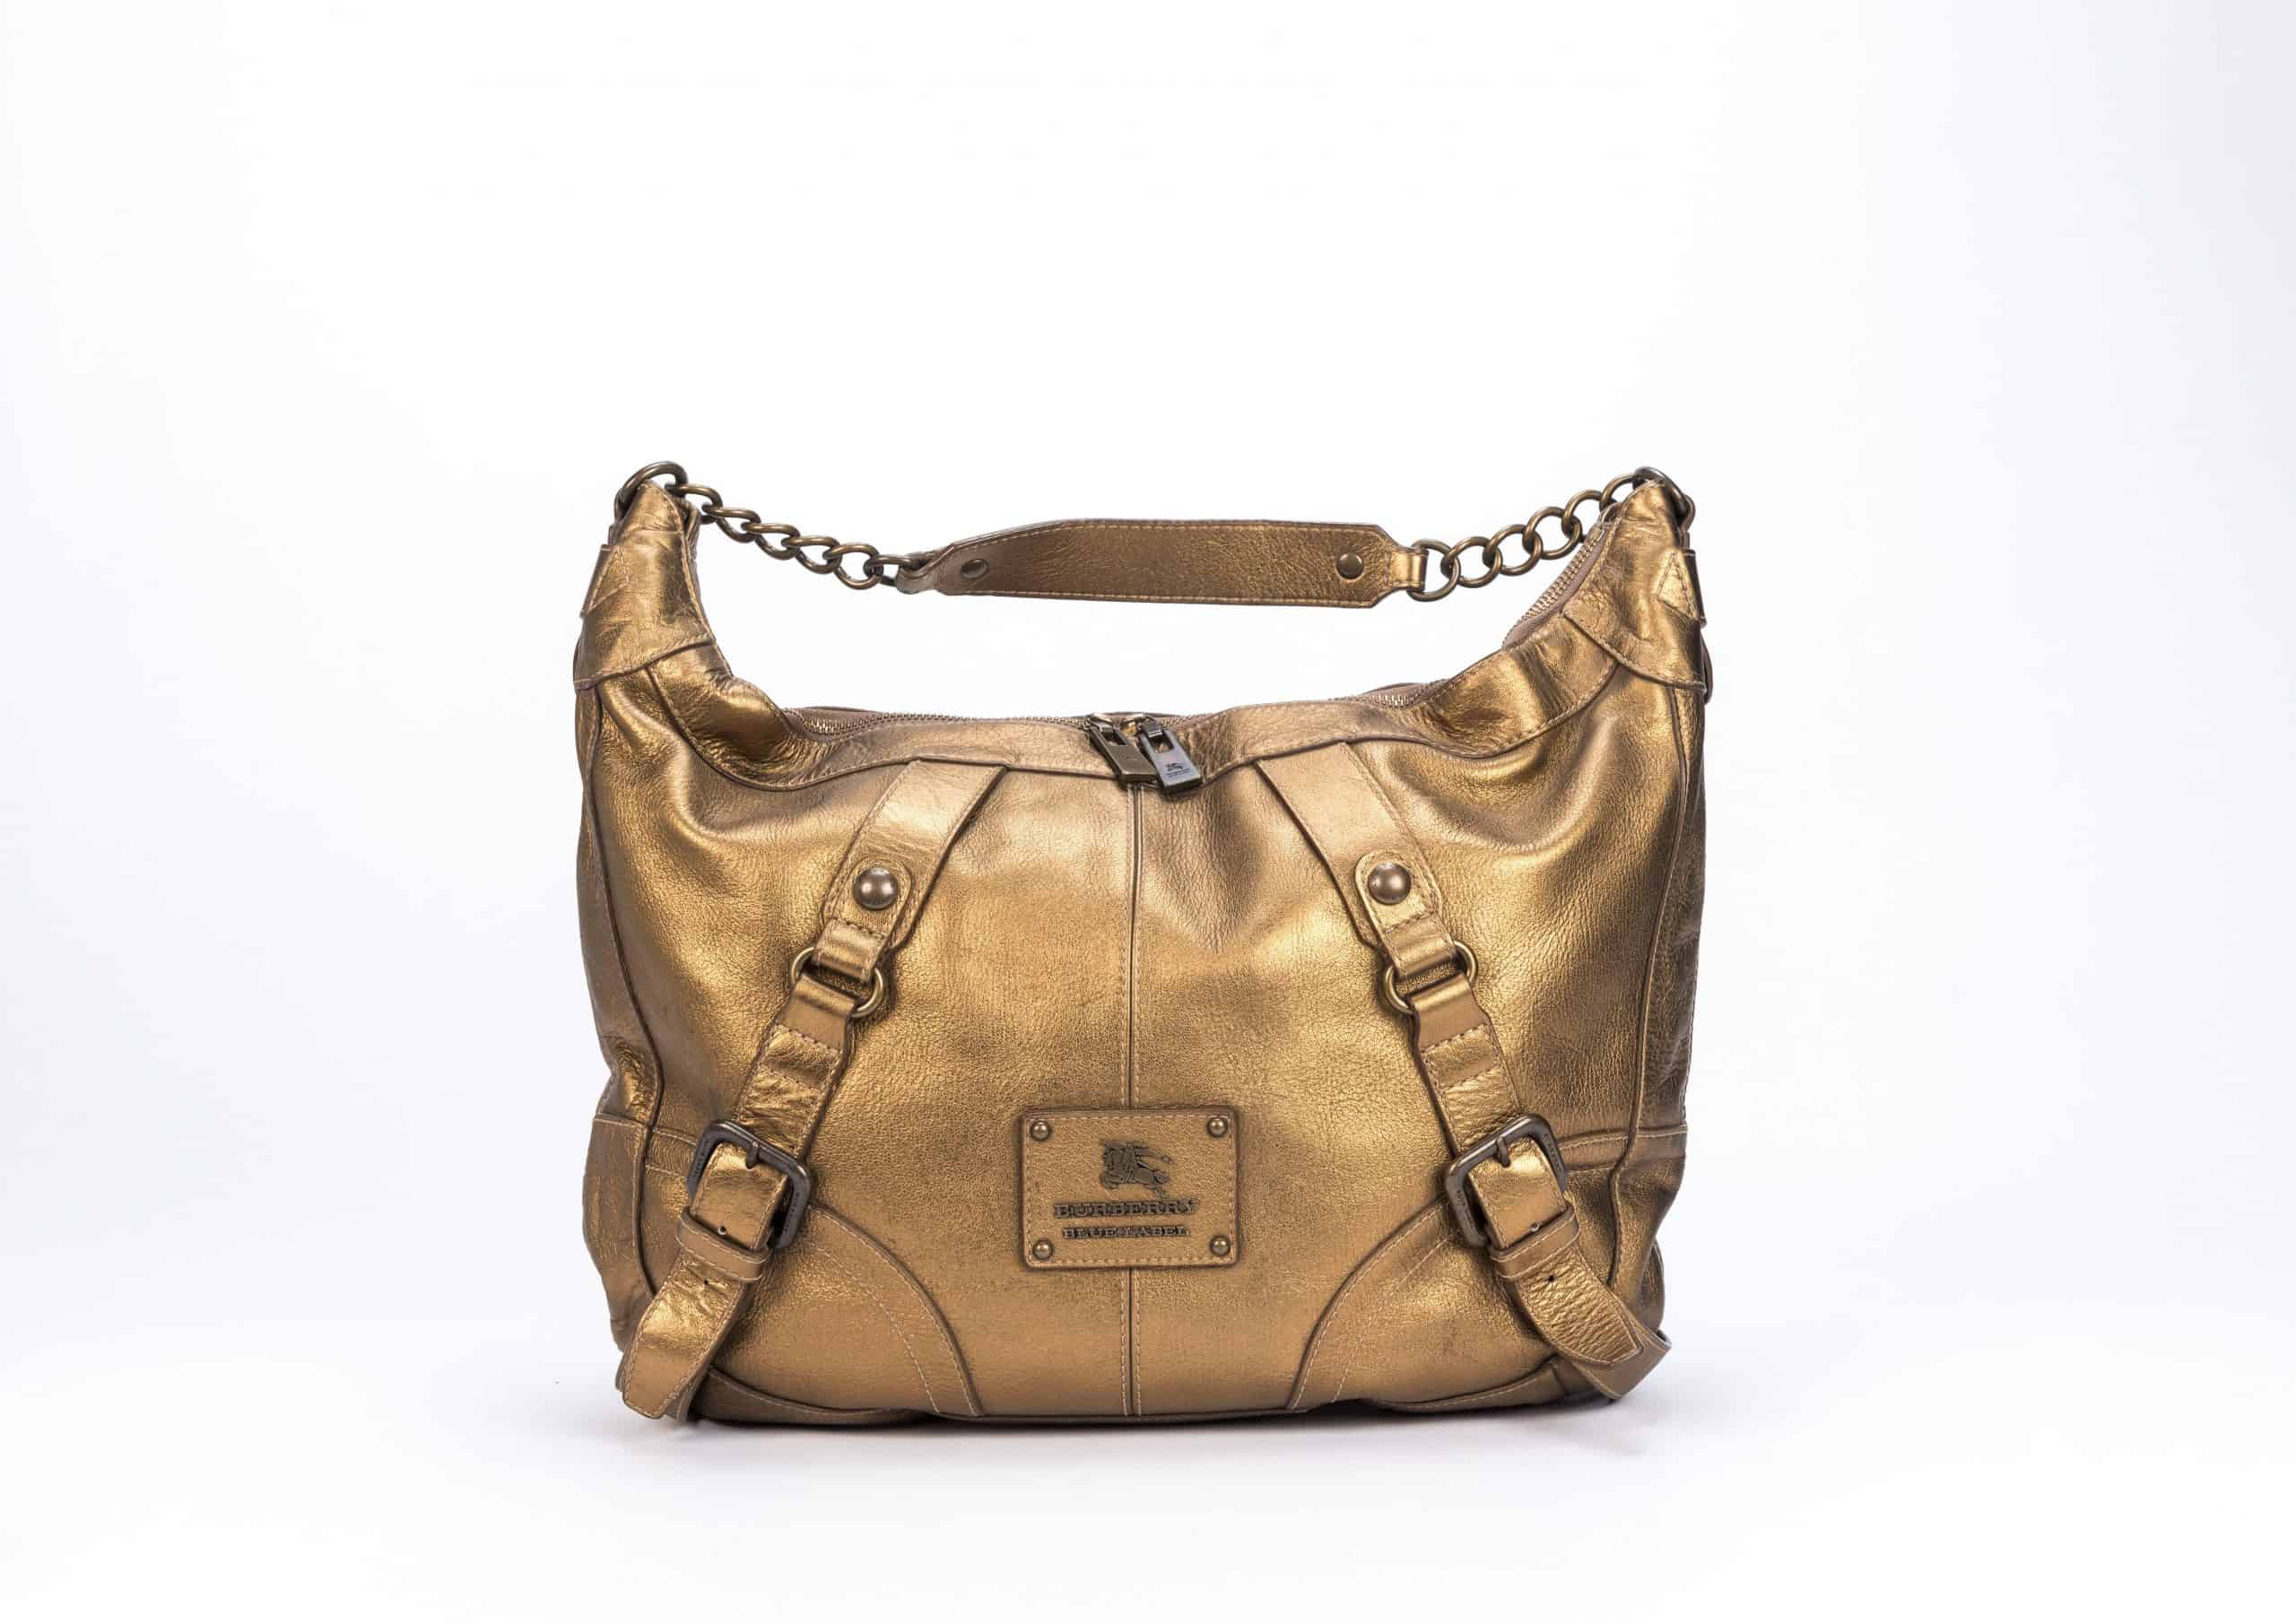 Burberry Blue Label Large Gold Shoulder Bag - 1